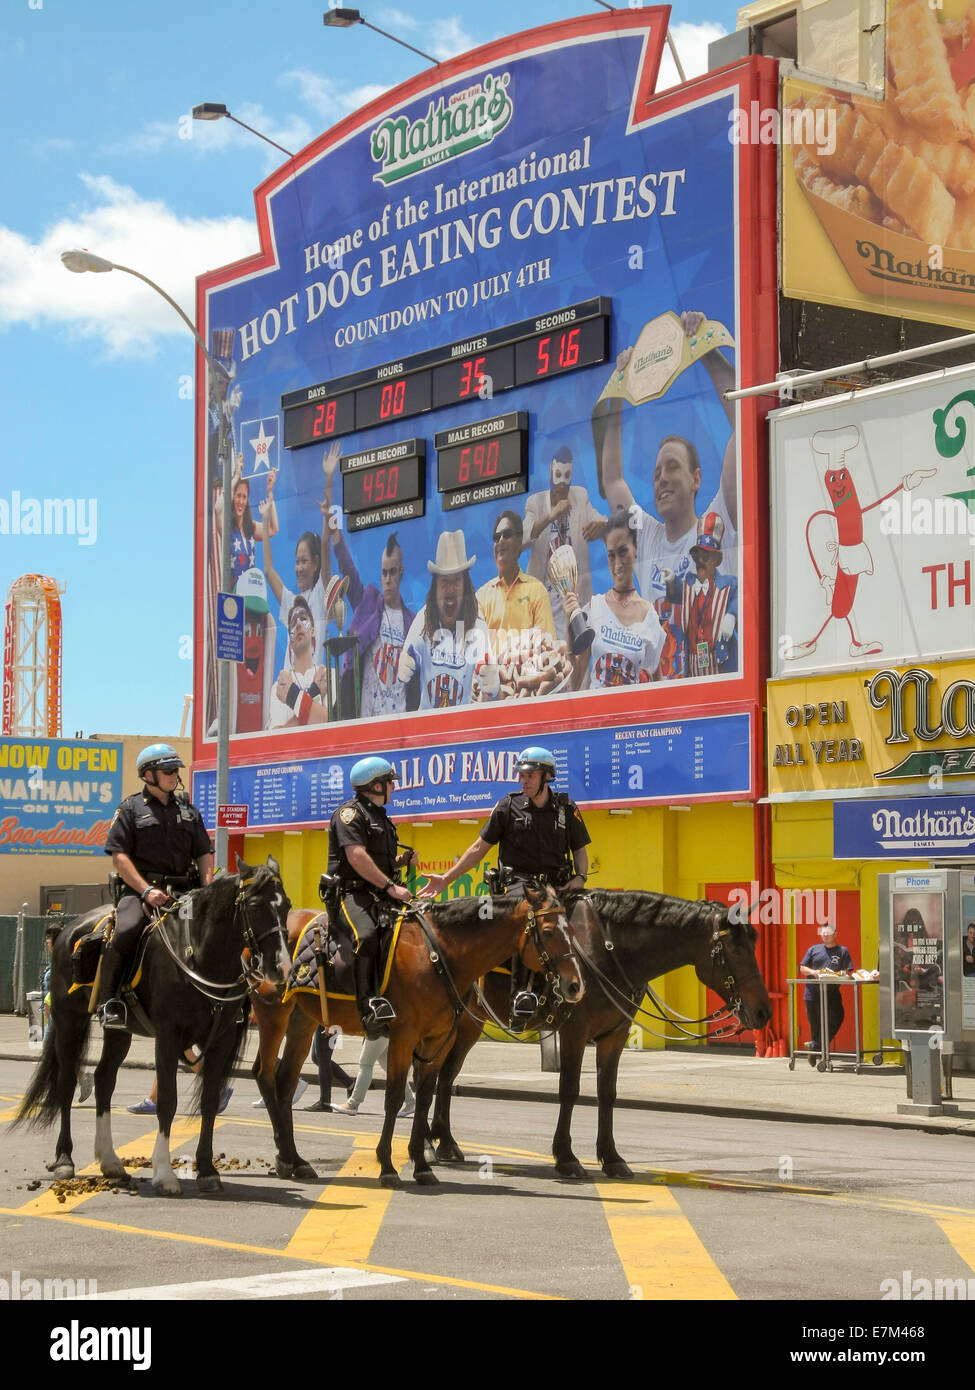 La obligación de llevar casco la policía montada en el cumplimiento de su deber en Coney Island, Nueva York. Nota un cartel publicitario para el concurso de comer perritos calientes de Nathan's Restaurant, una gran atracción de este parque de diversiones. Foto de stock